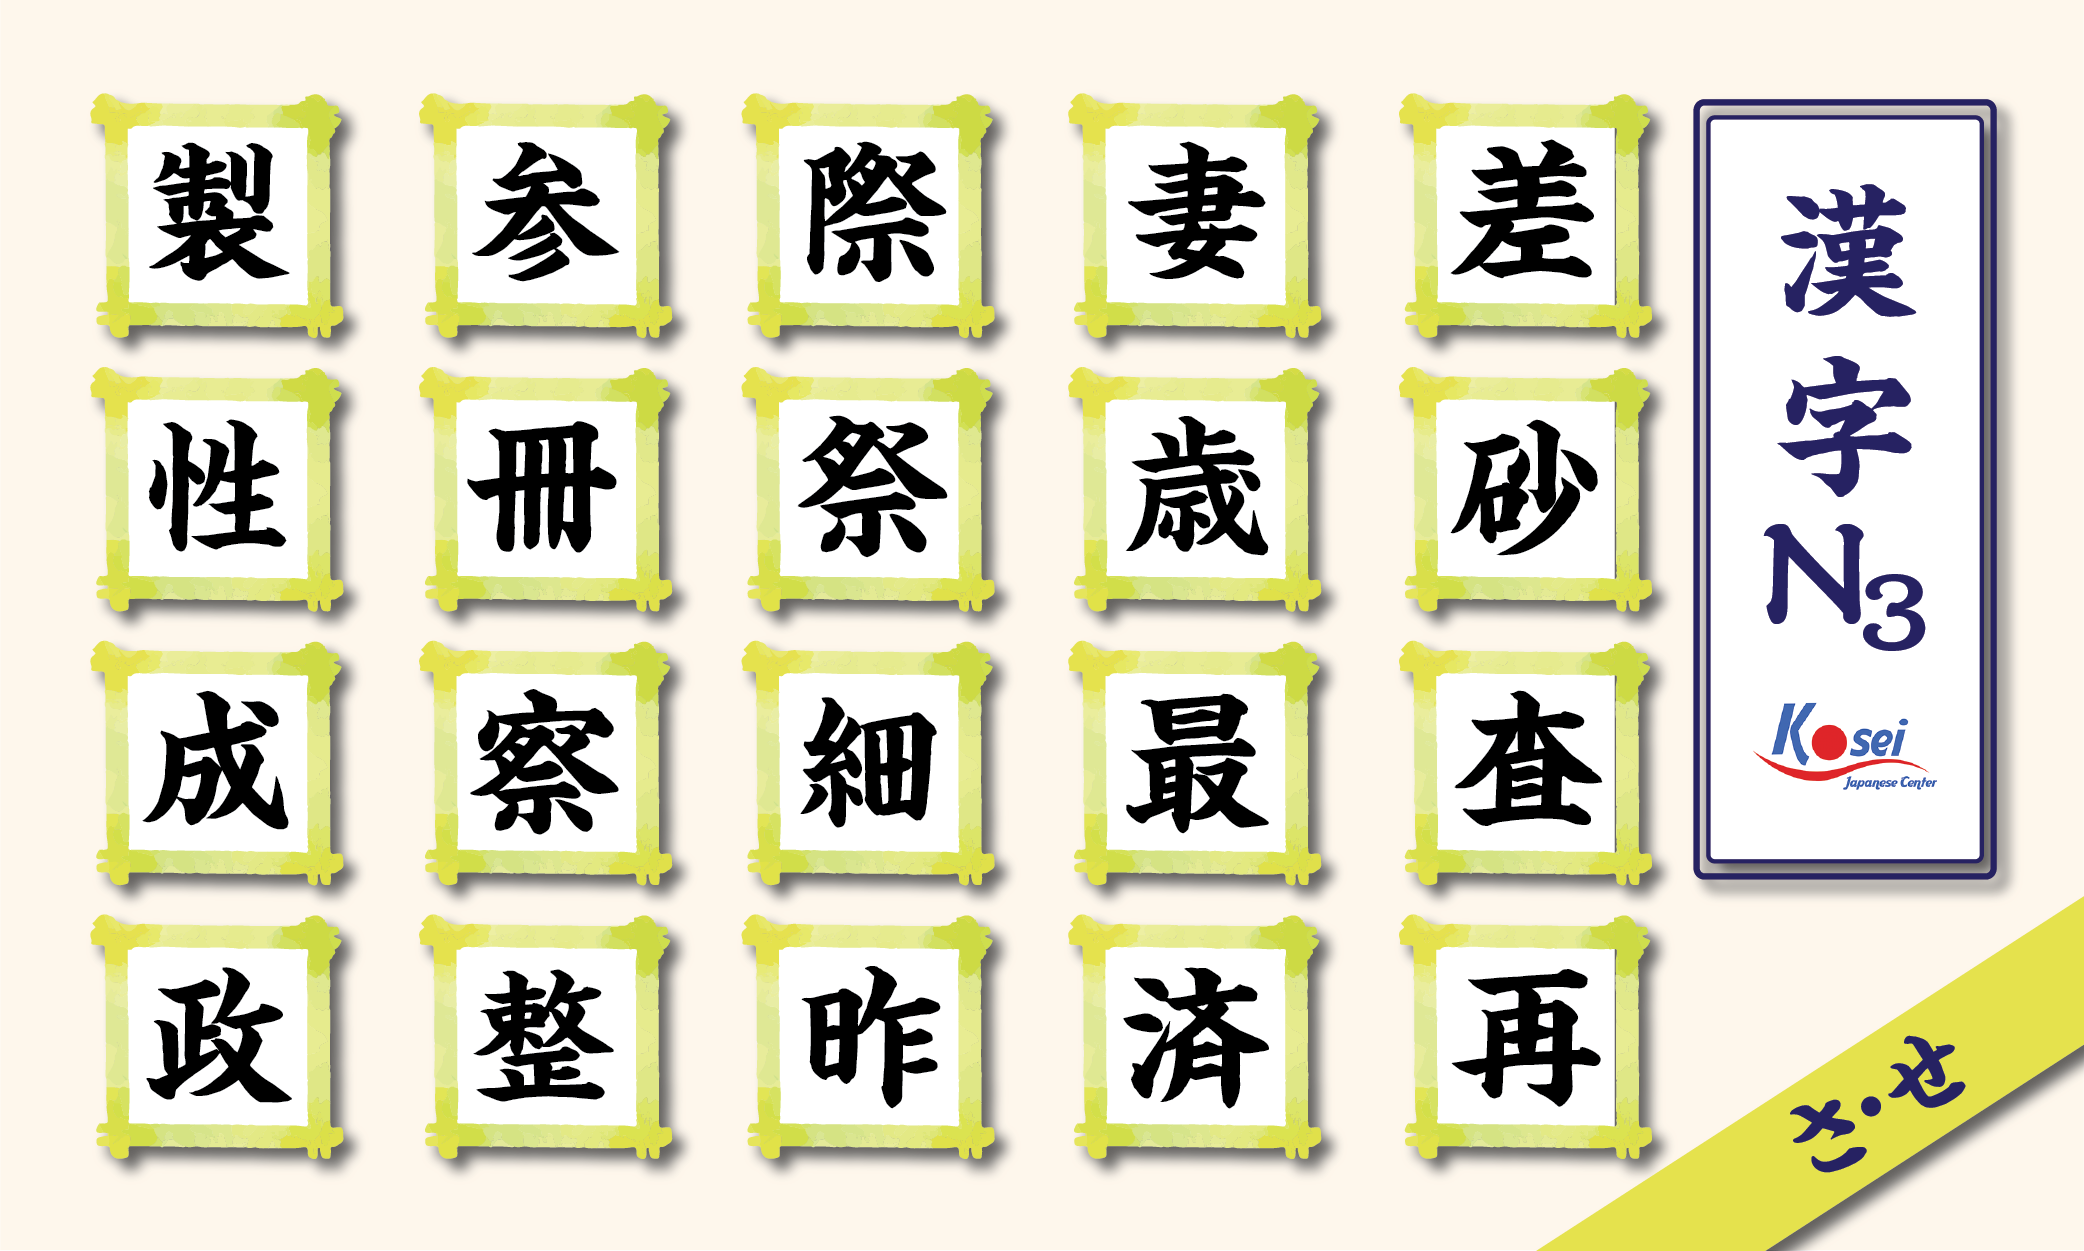 kanji n3 theo âm on hàng s